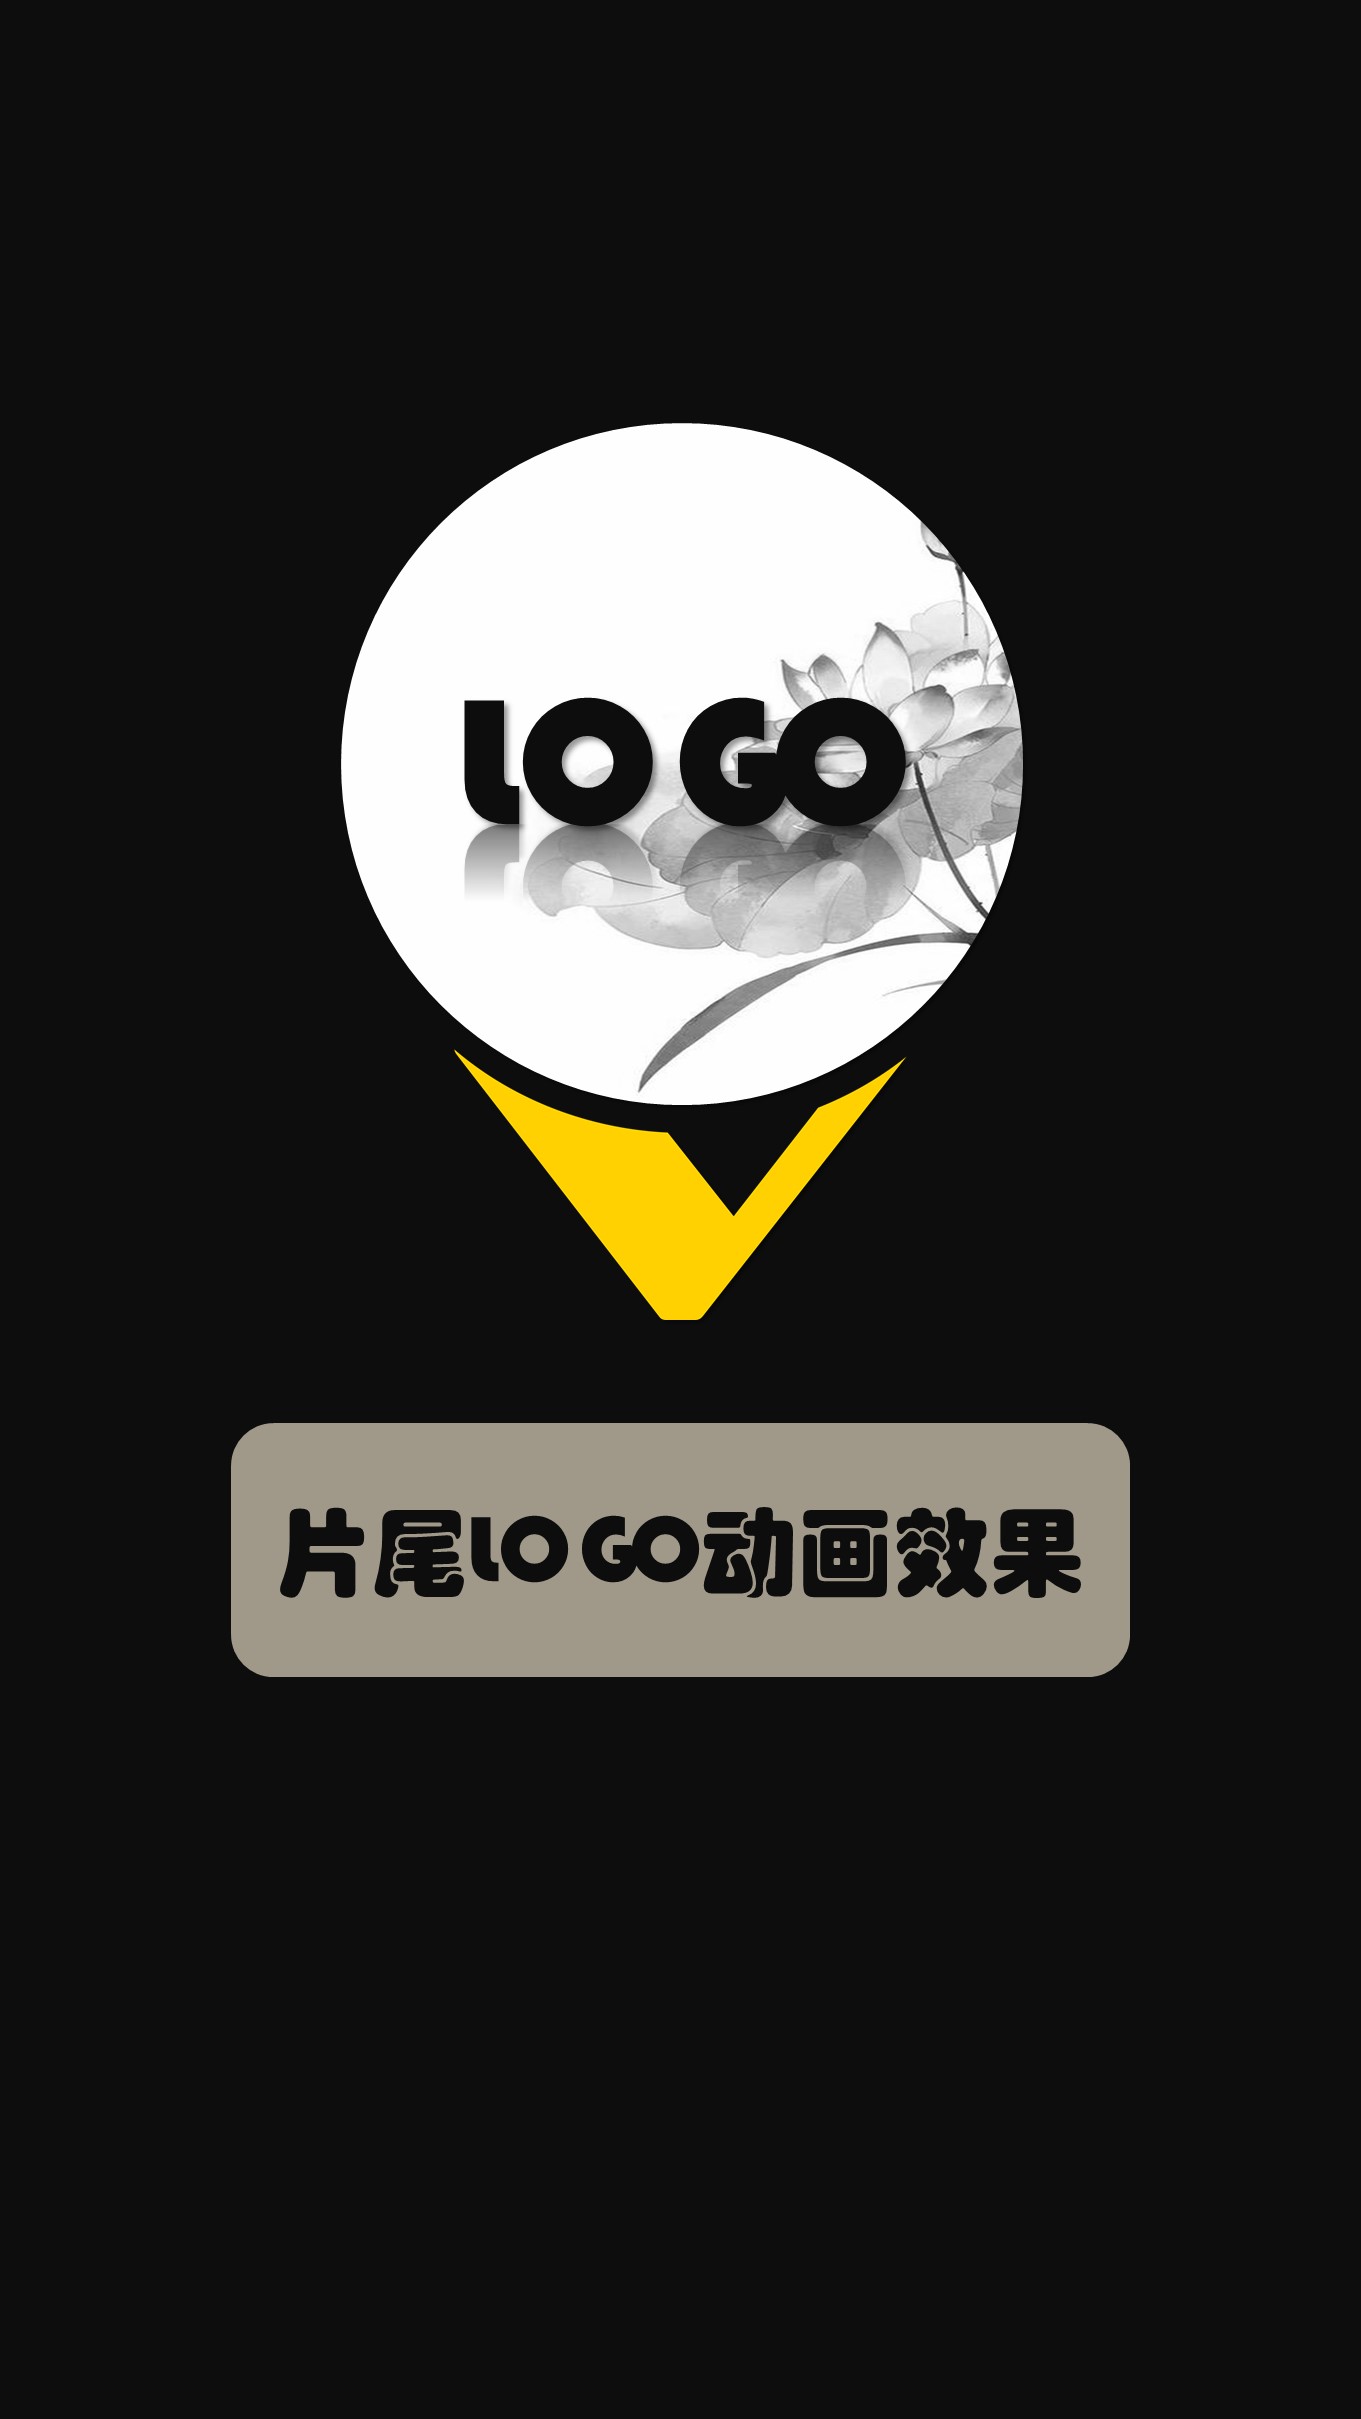 20-咖啡灰片头片尾封面LOGO动画竖版 (9).JPG